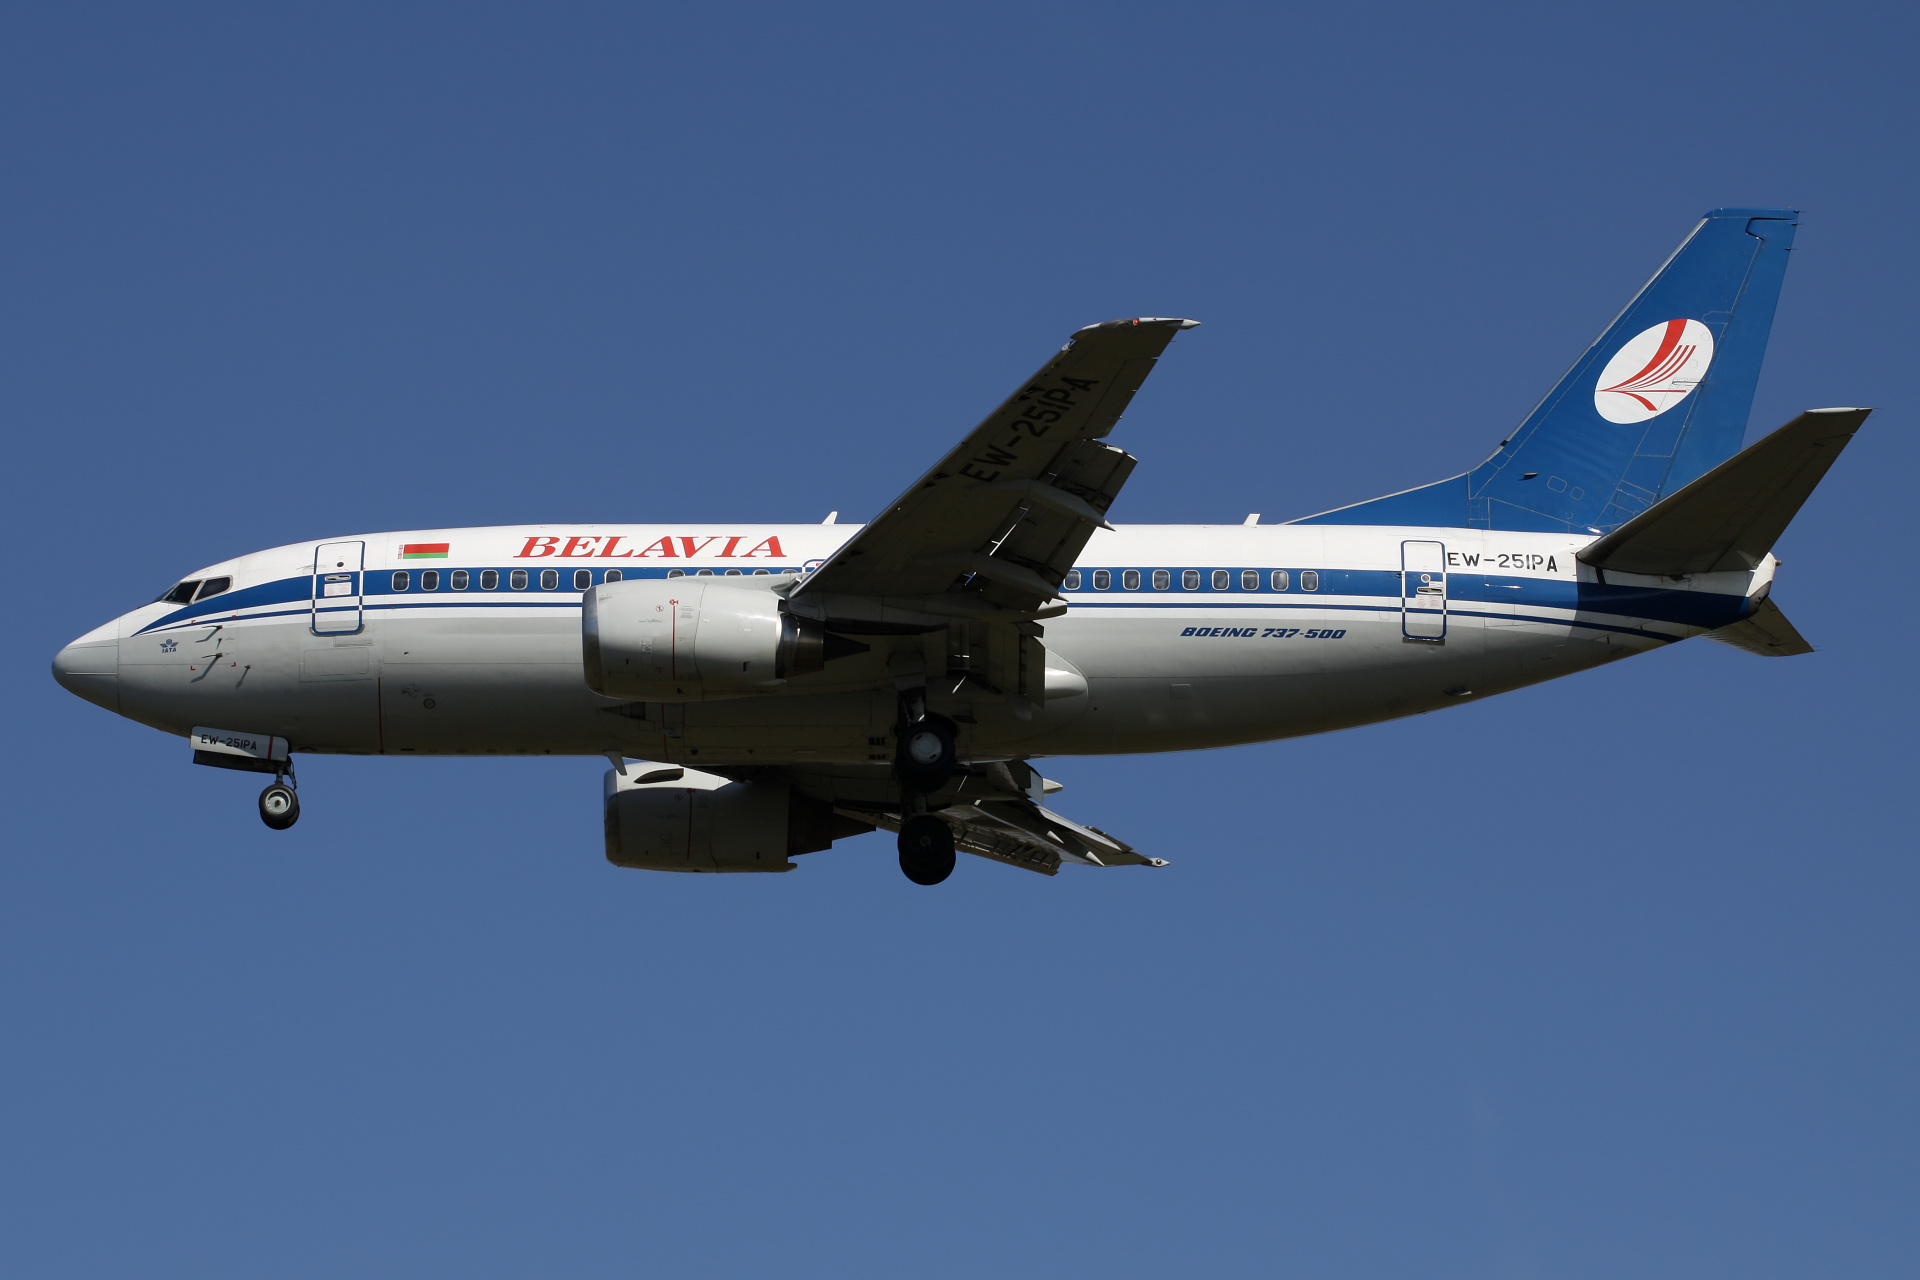 EW-251PA (Aircraft » EPWA Spotting » Boeing 737-500 » Belavia)